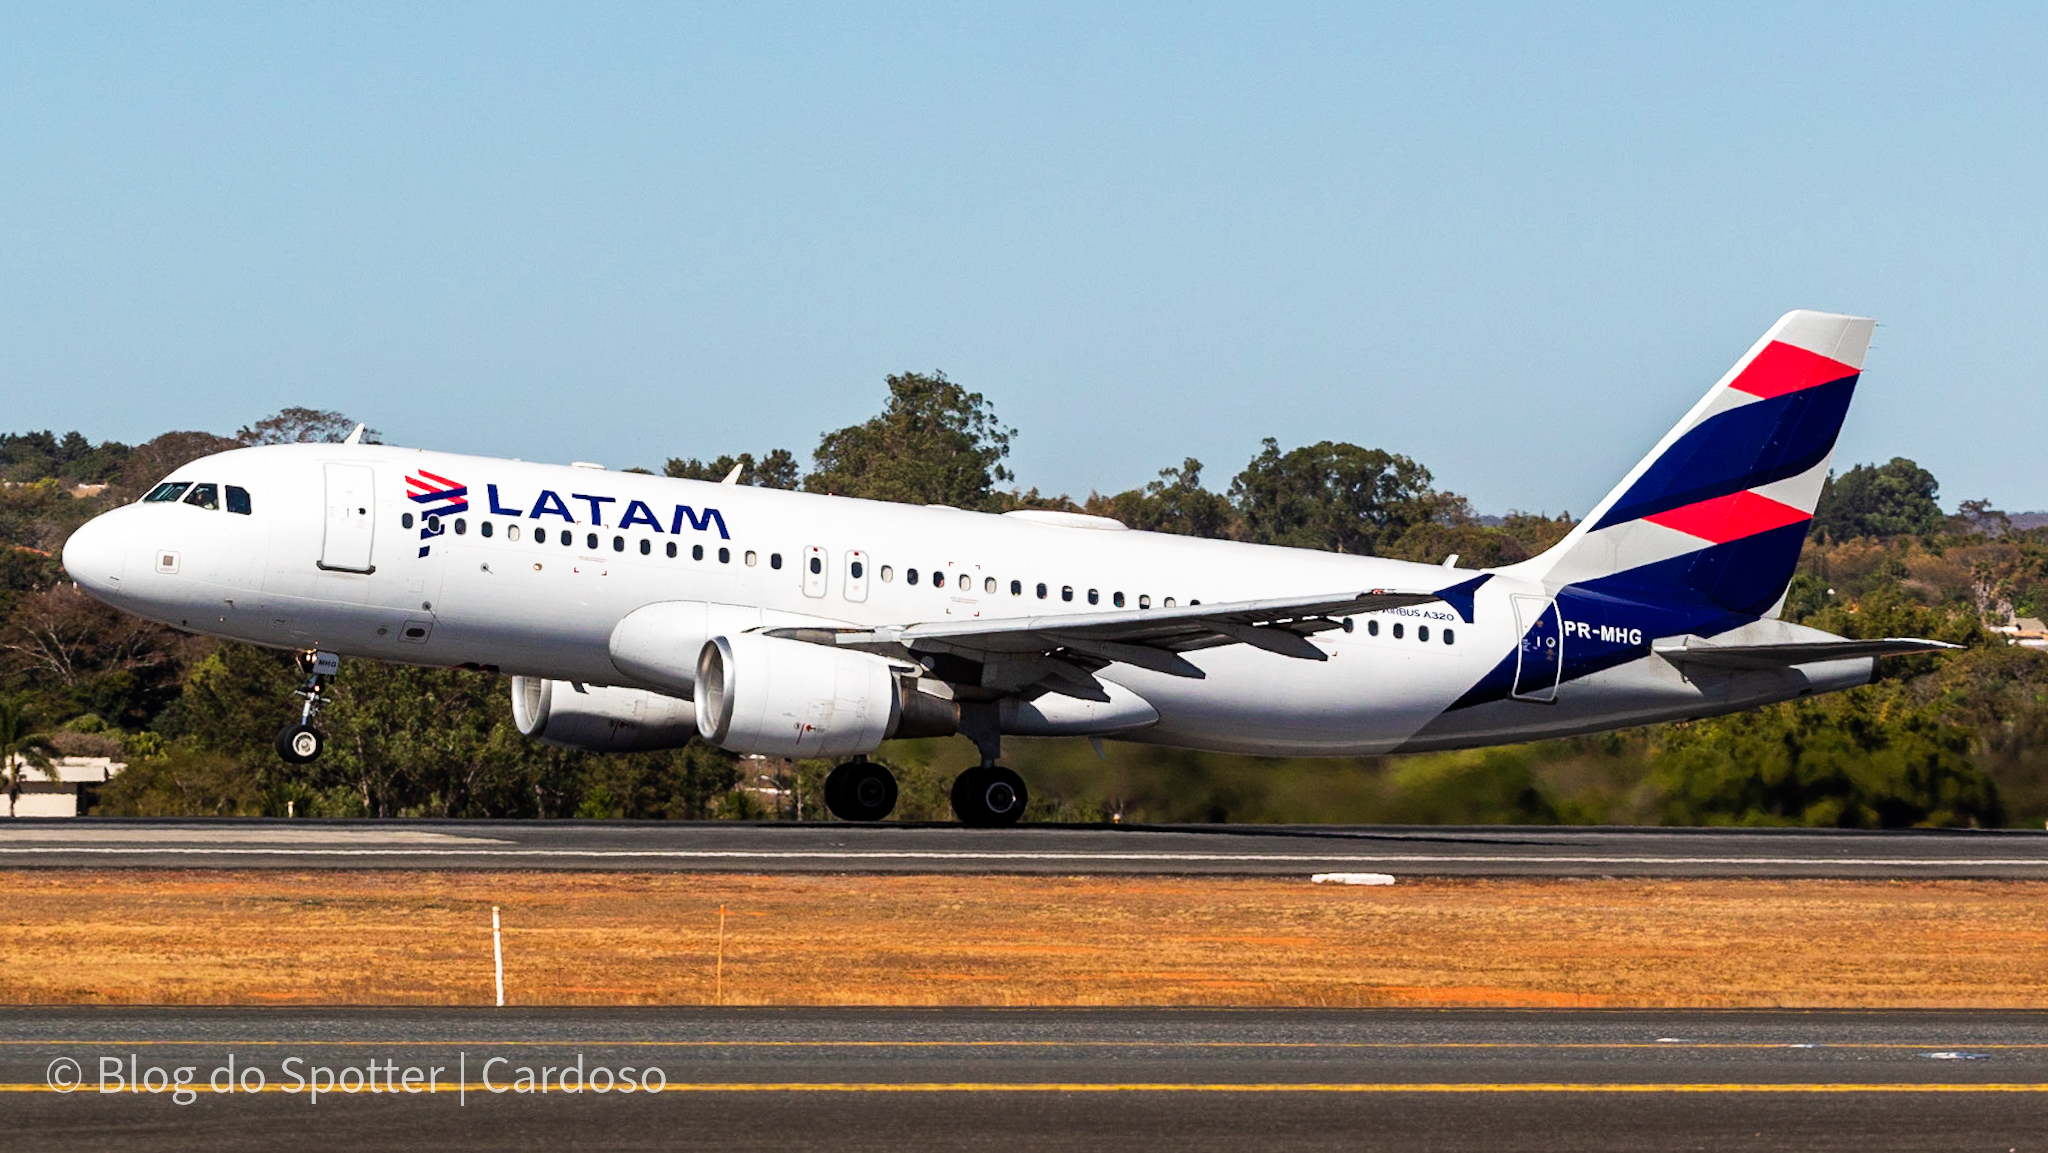 PR-MHG - Airbus A320-214 - LATAM Airlines - Spotter Day 2022 do Aeroporto de Brasília